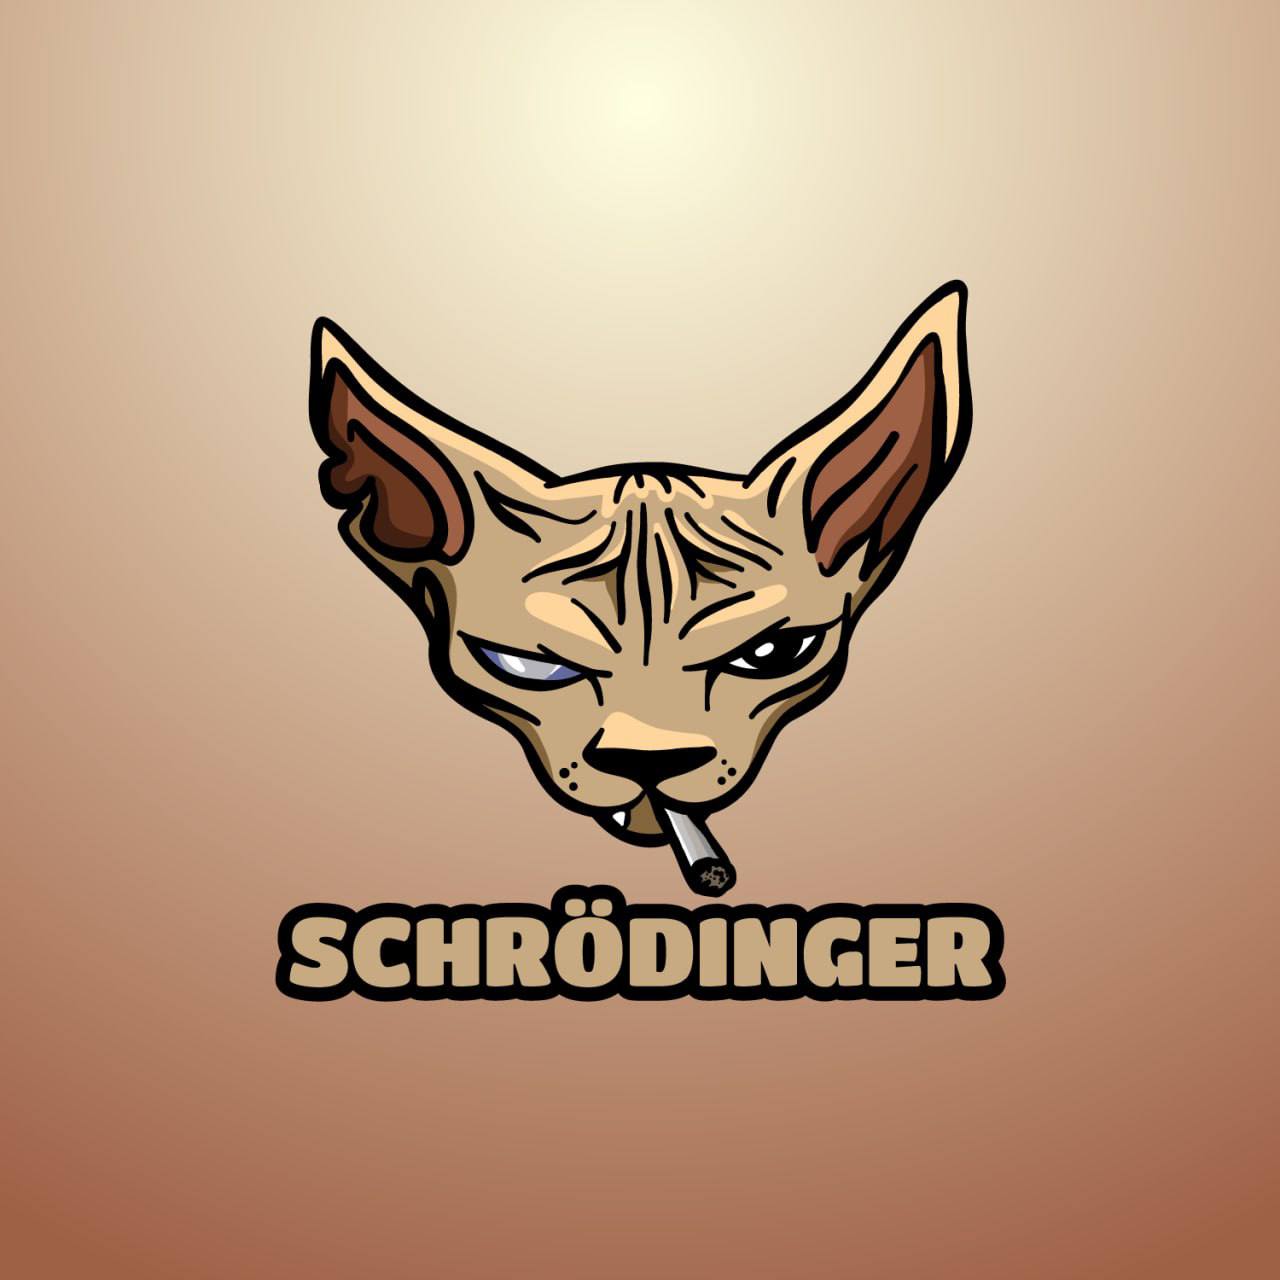 , Schrodinger, The New Memecoin Sensation Based On A Unique Quantum Cat, Announces Successful Launch